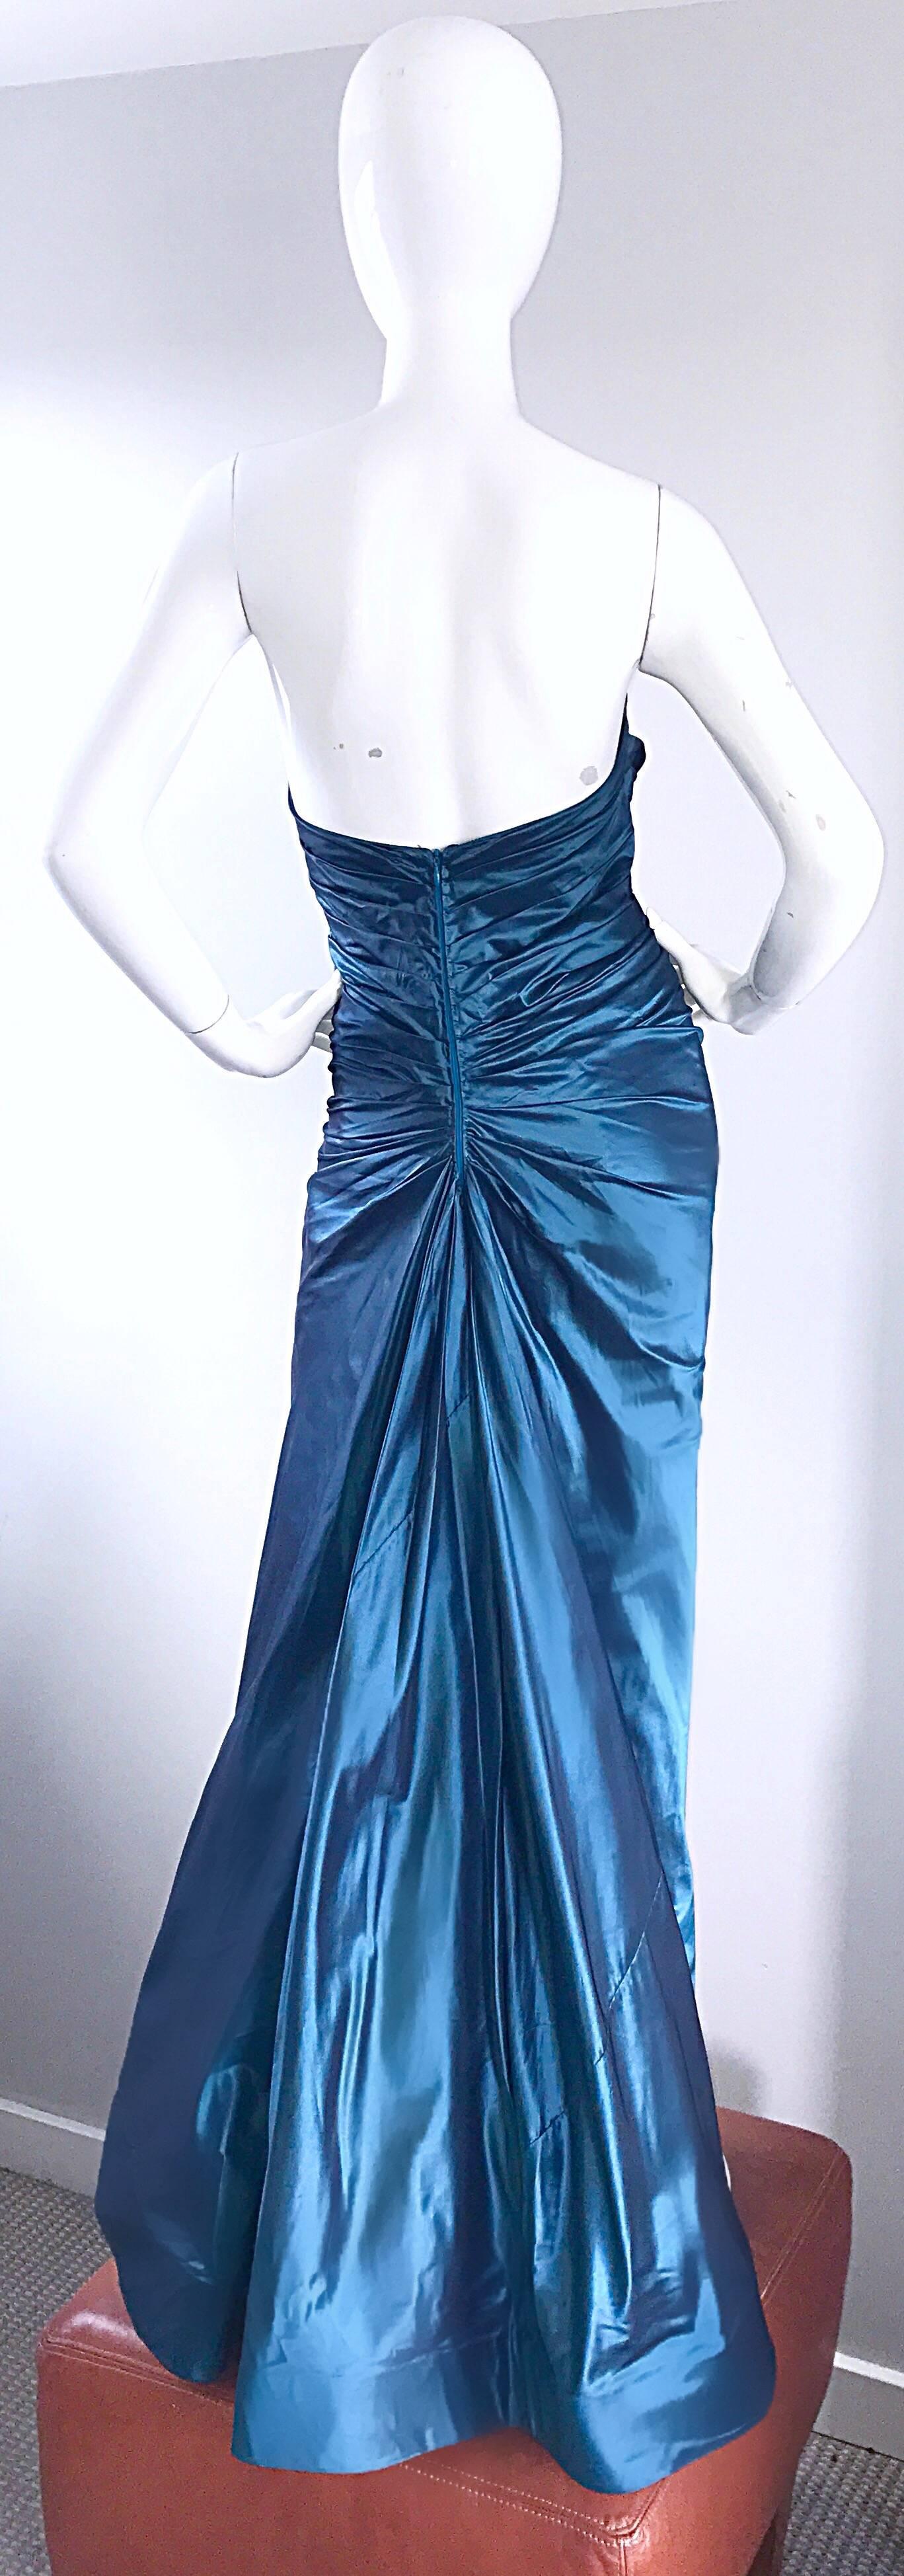 Exceptionnelle robe vintage RONALD NIVELAIS pour BERGDORF GOODMAN en taffetas de soie bleu sans bretelles ! Les fronces flatteuses dissimulent tous les défauts. Dos dramatique, avec draperies et plis. La qualité de la couture avec une telle